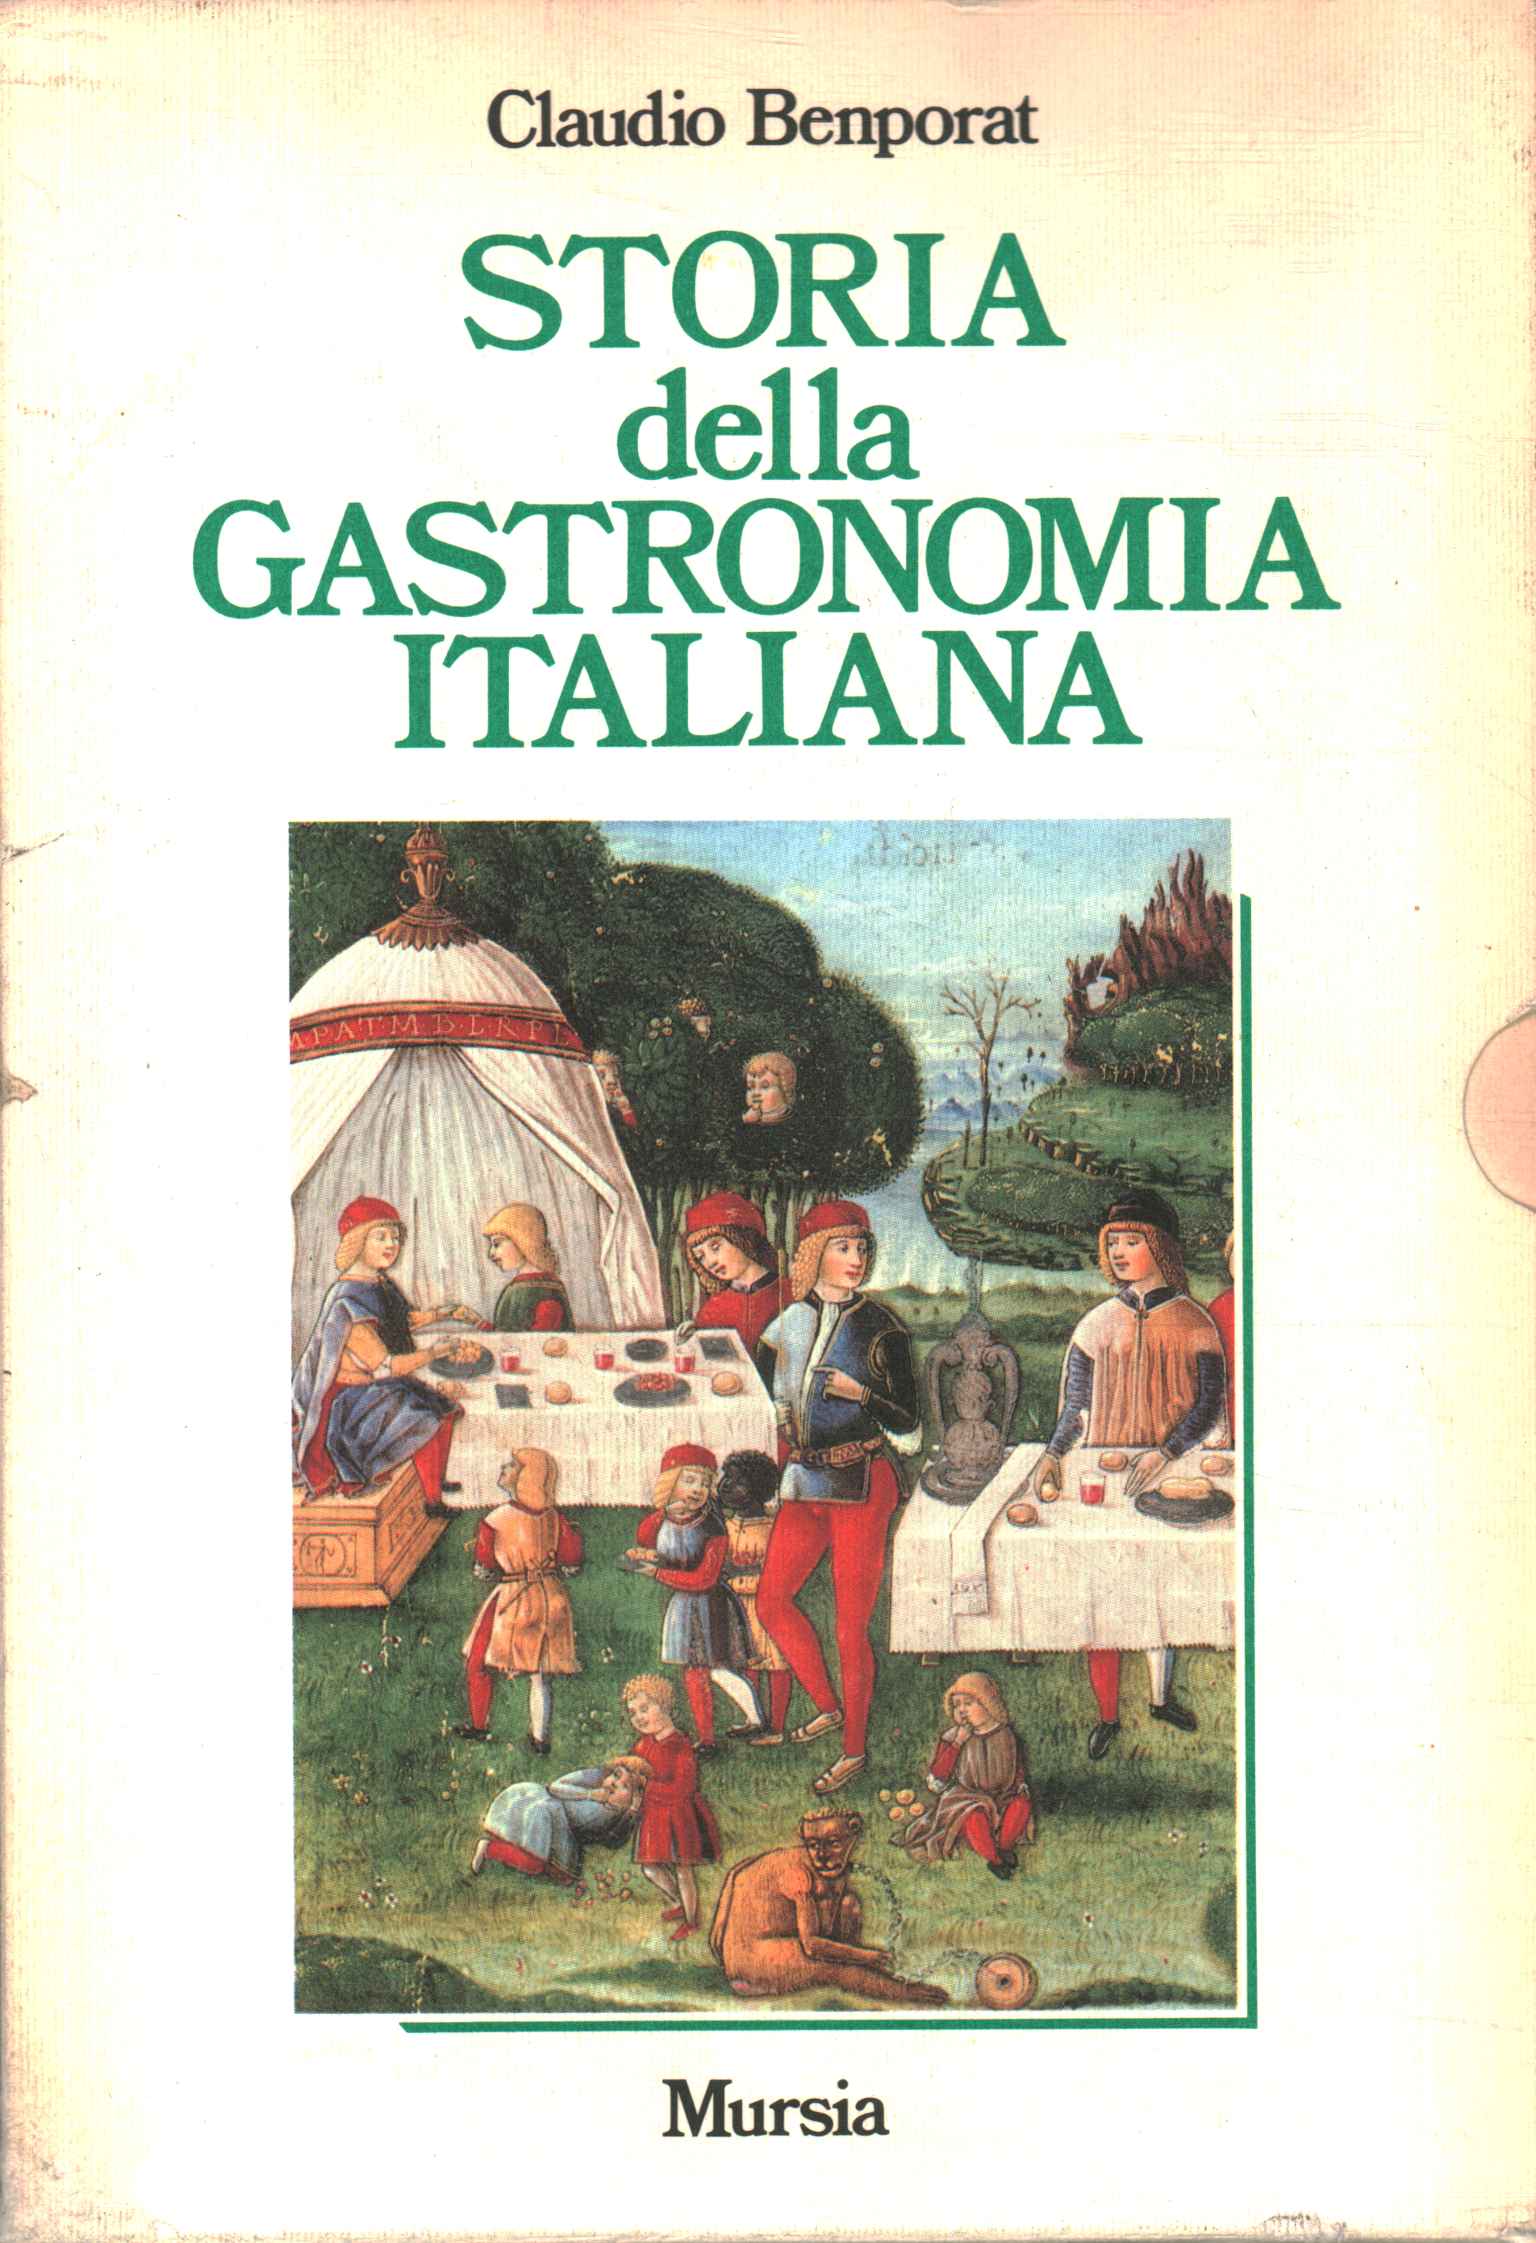 History of Italian gastronomy